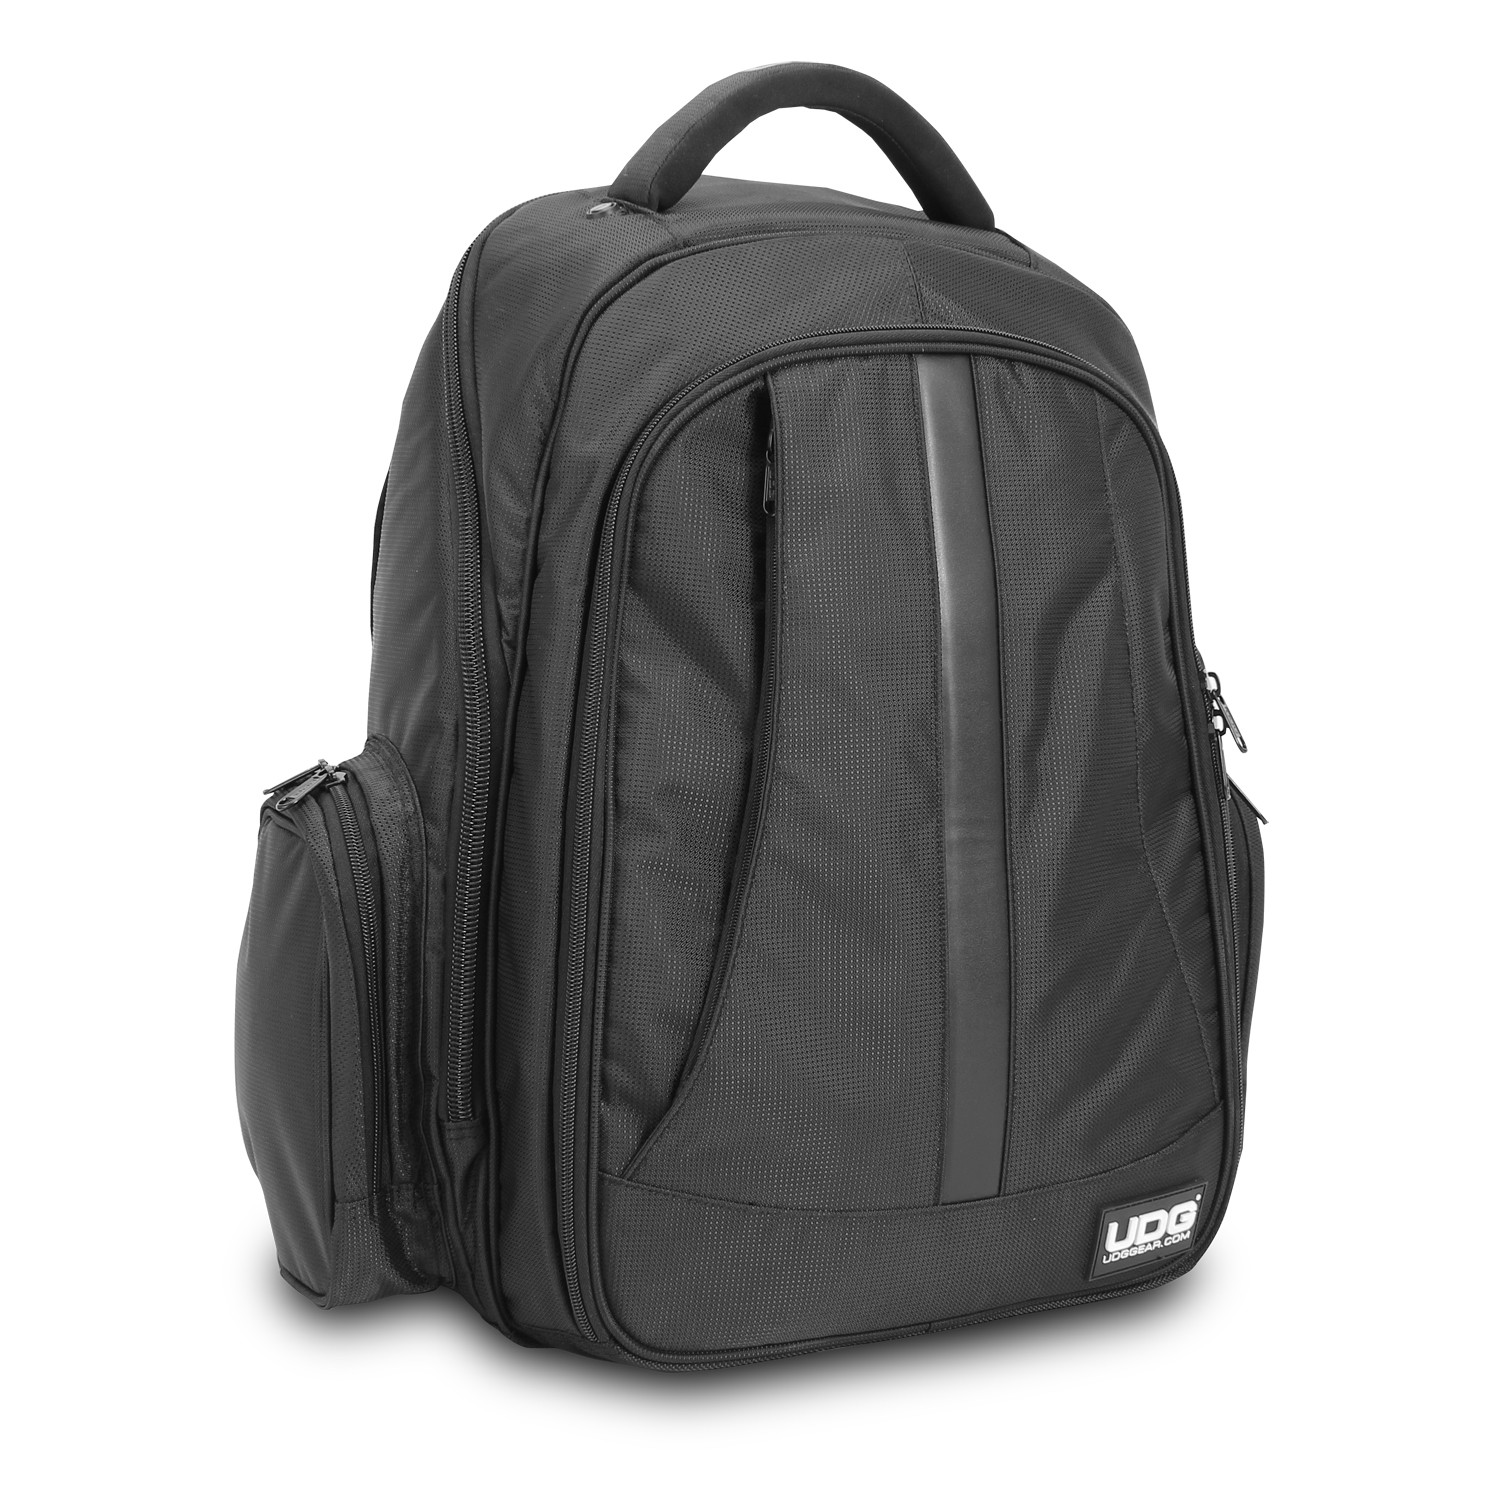 UDG U9102BL/OR - Ultimate Backpack Black/Orange inside-